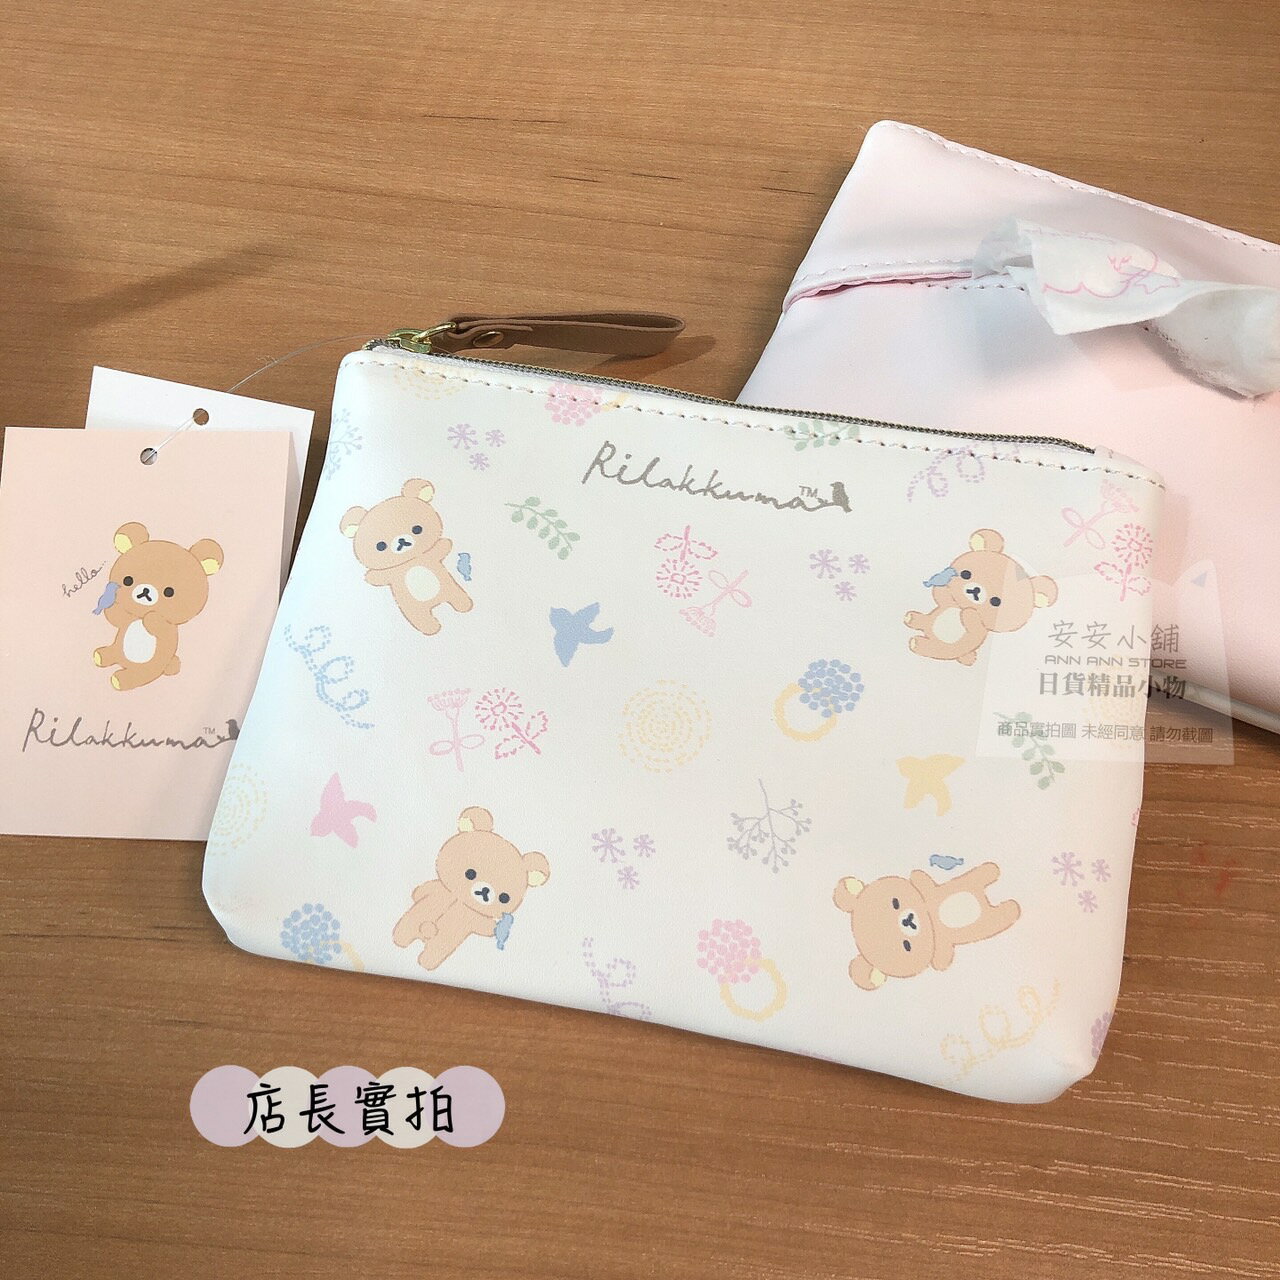 日本帶回 SAN-X 拉拉熊 快樂青鳥系列 收納小物包 化妝包 面紙收納包 隨身包 小包 手拿包 交換禮物 生日禮物